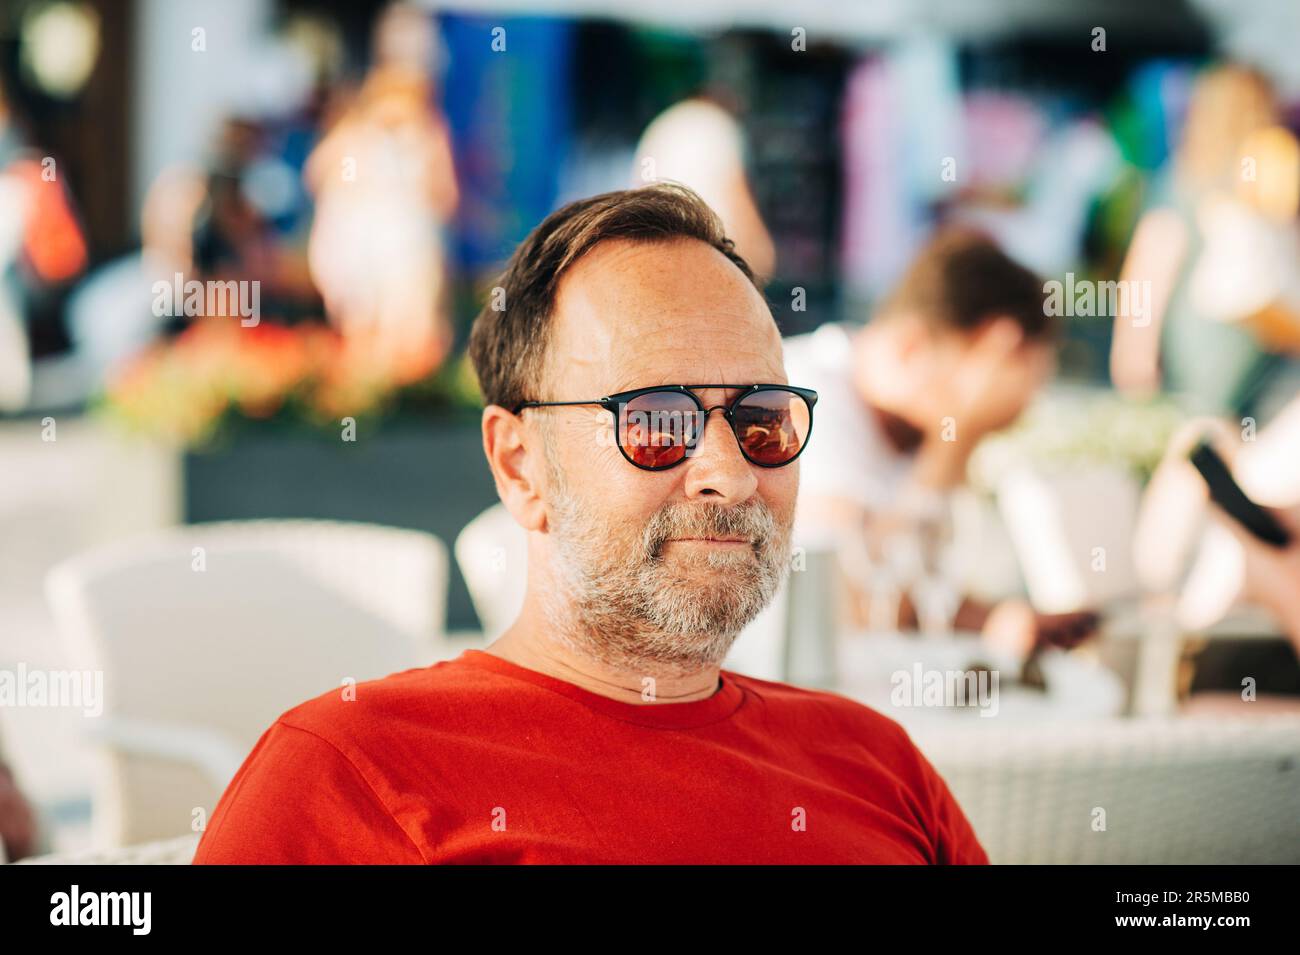 Ritratto all'aperto di un uomo di 50 anni che indossa una t-shirt rossa e occhiali da sole Foto Stock